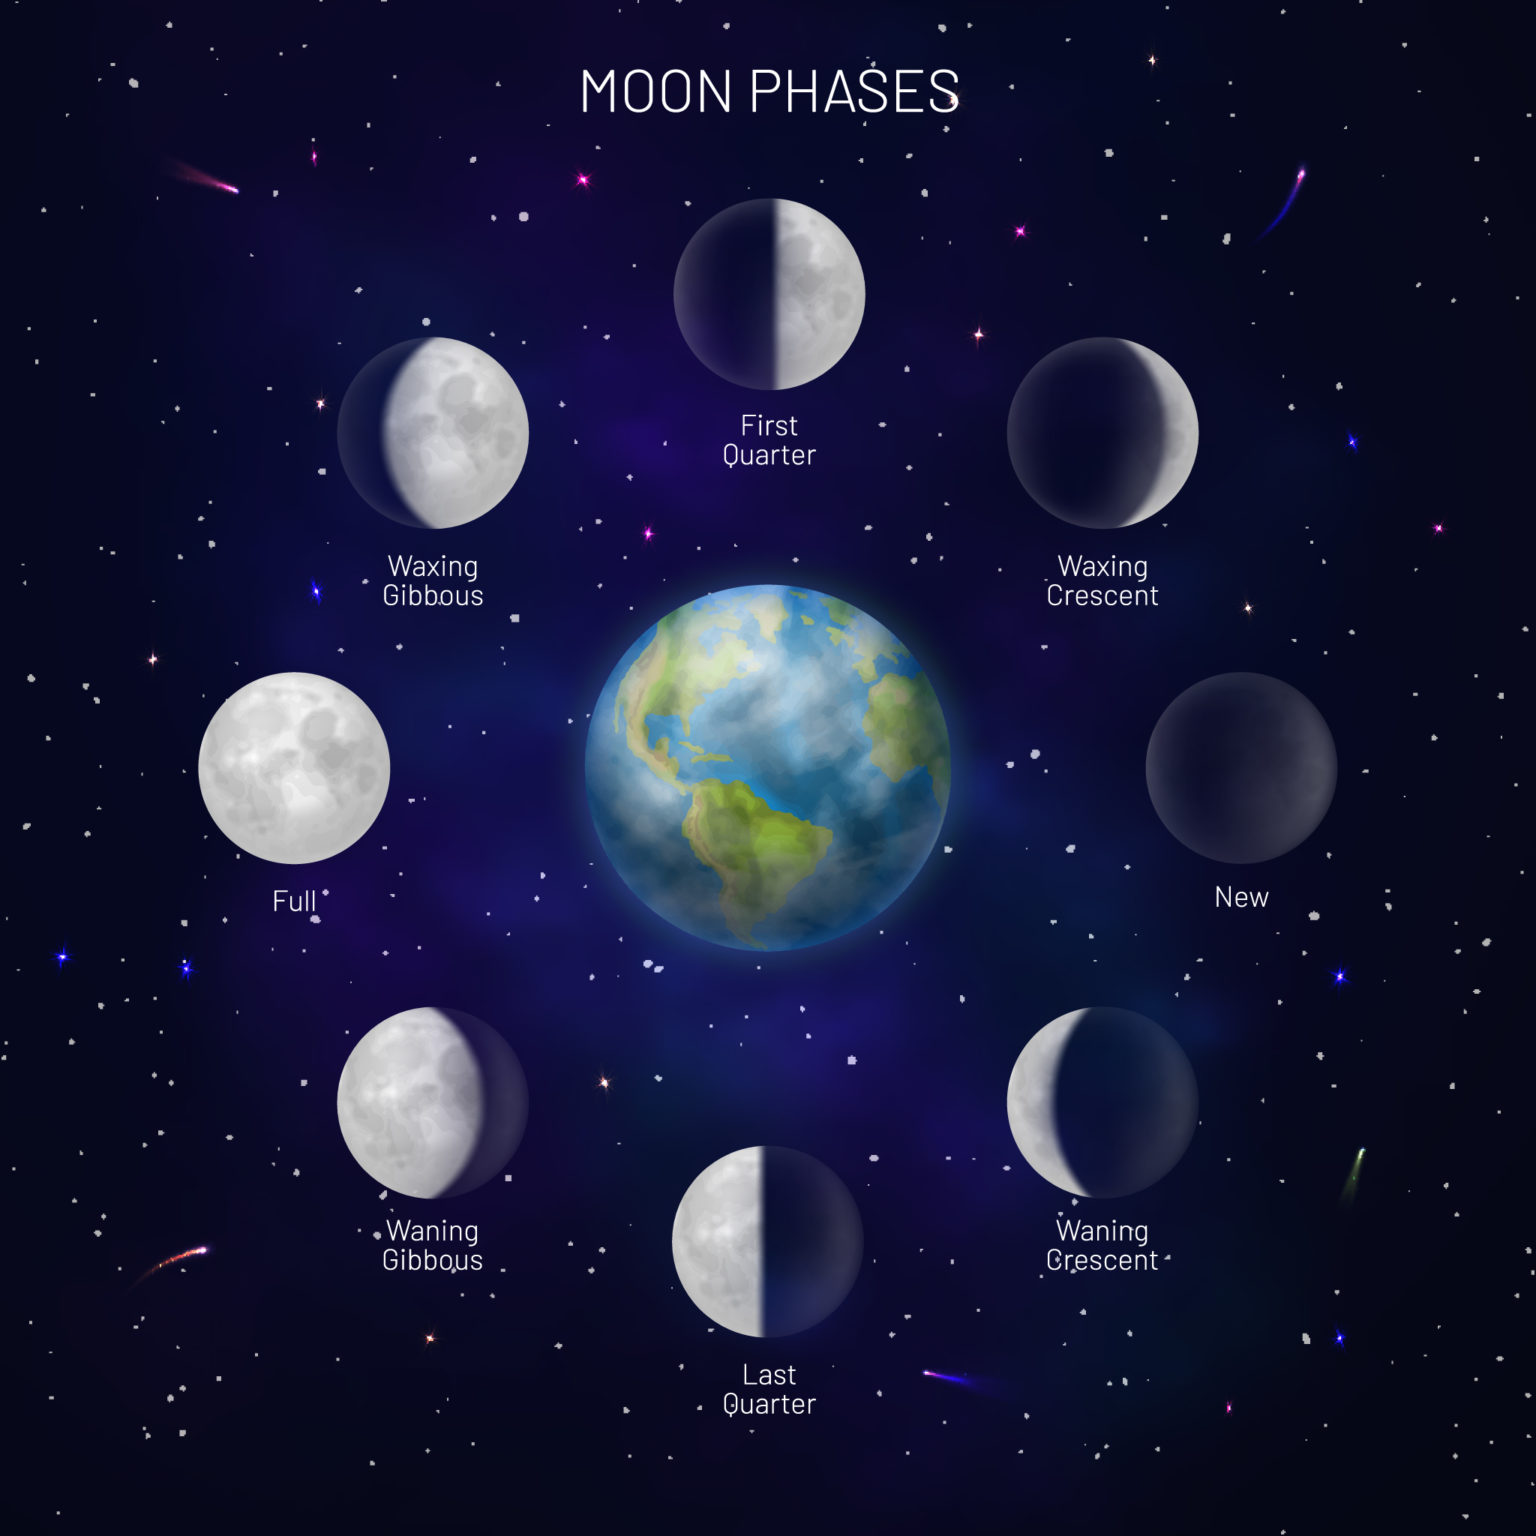 lunar-phases-explanation-design-talk